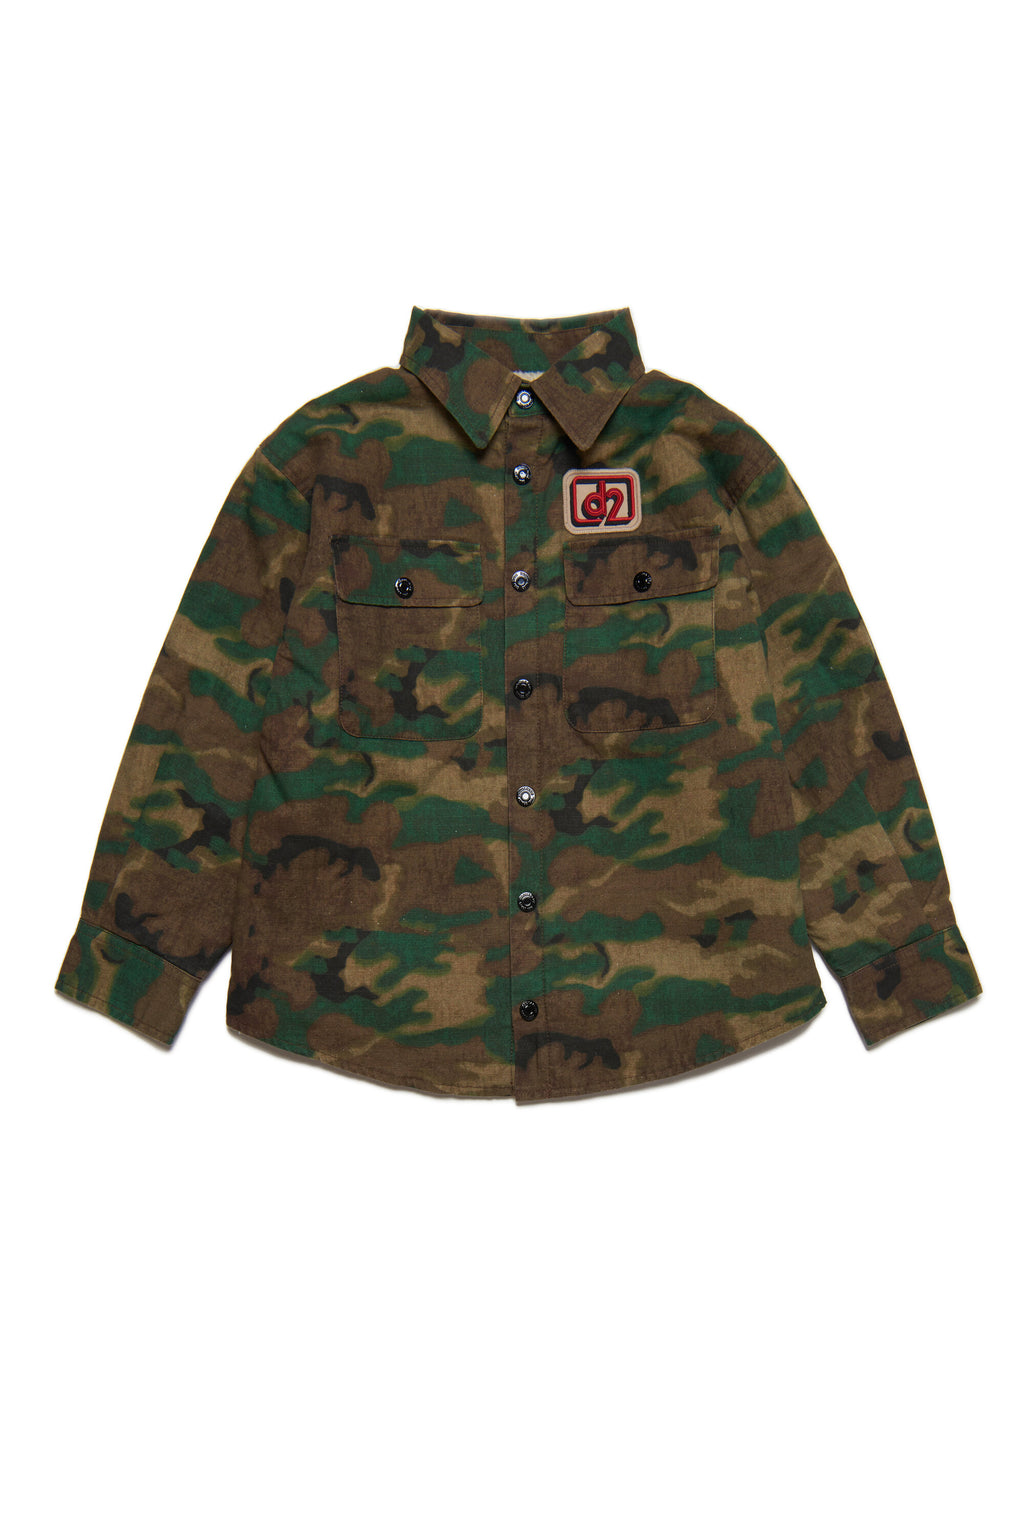 Camicia in cotone ripstop allover camouflage